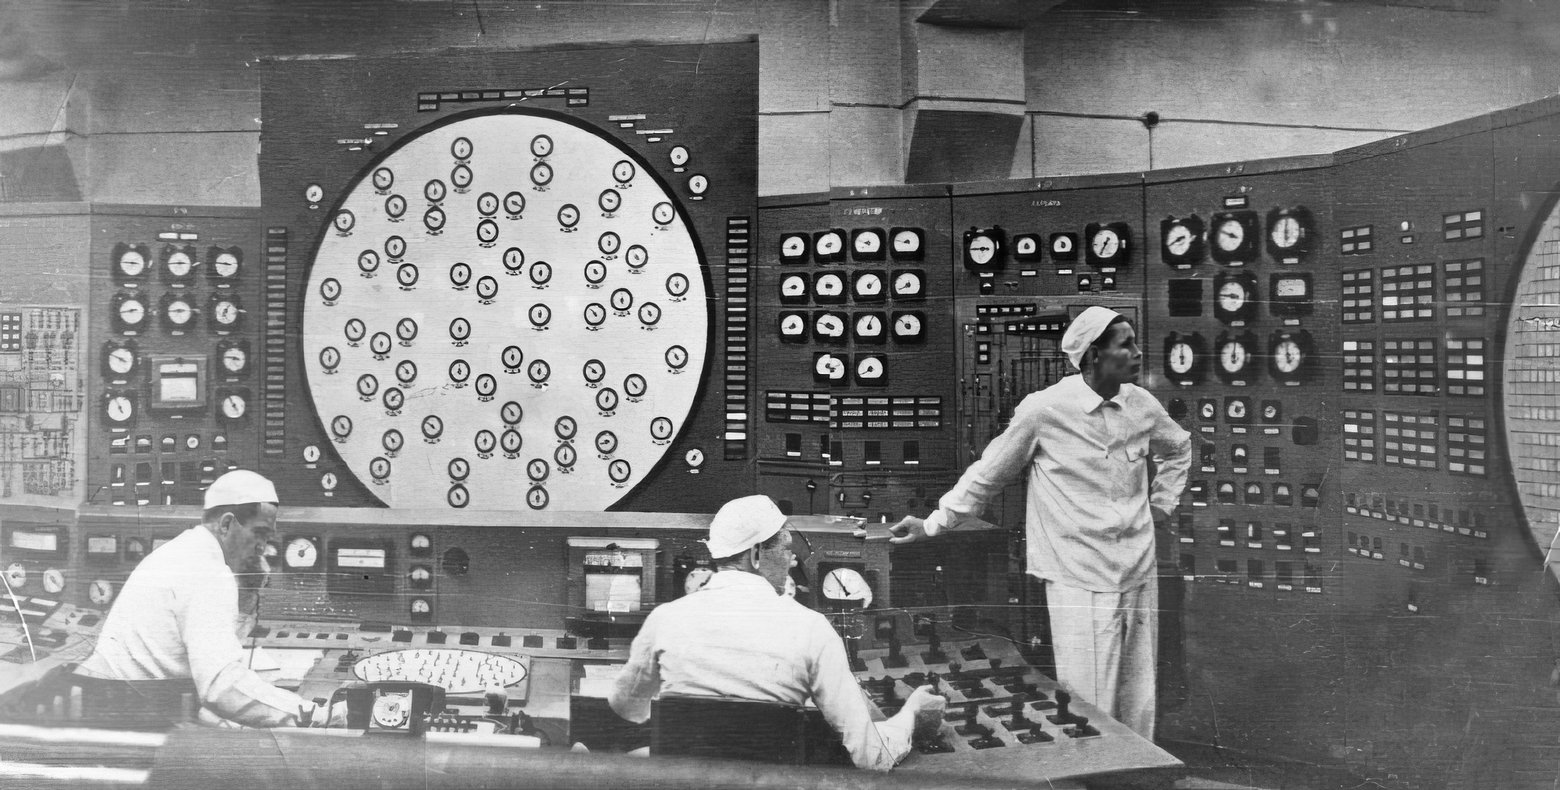 Аэс союз. АМБ-100 реактор. Белоярская АЭС АМБ-100. Обнинская АЭС БЩУ. Обнинская АЭС 1954.